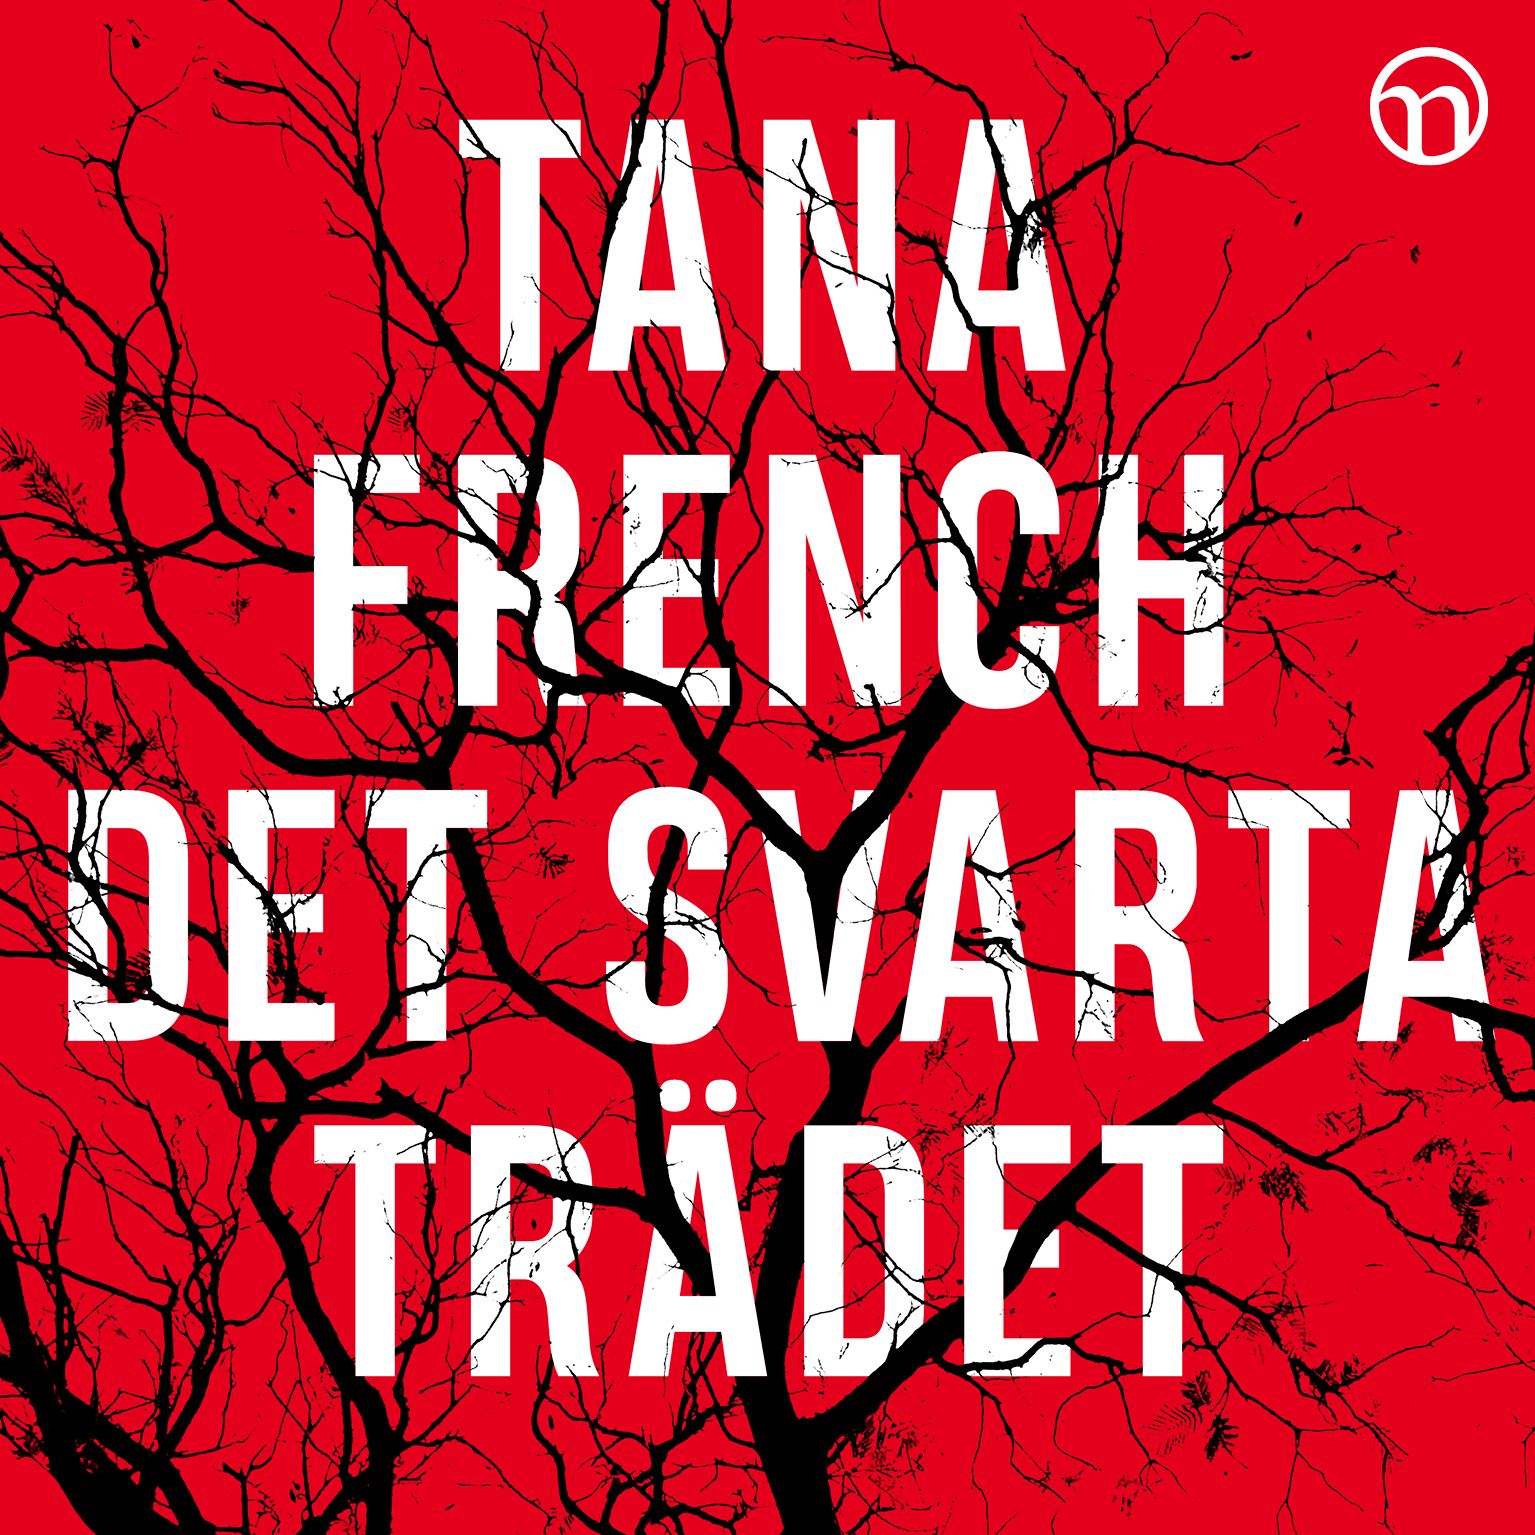 Det svarta trädet, ljudbok av Tana French